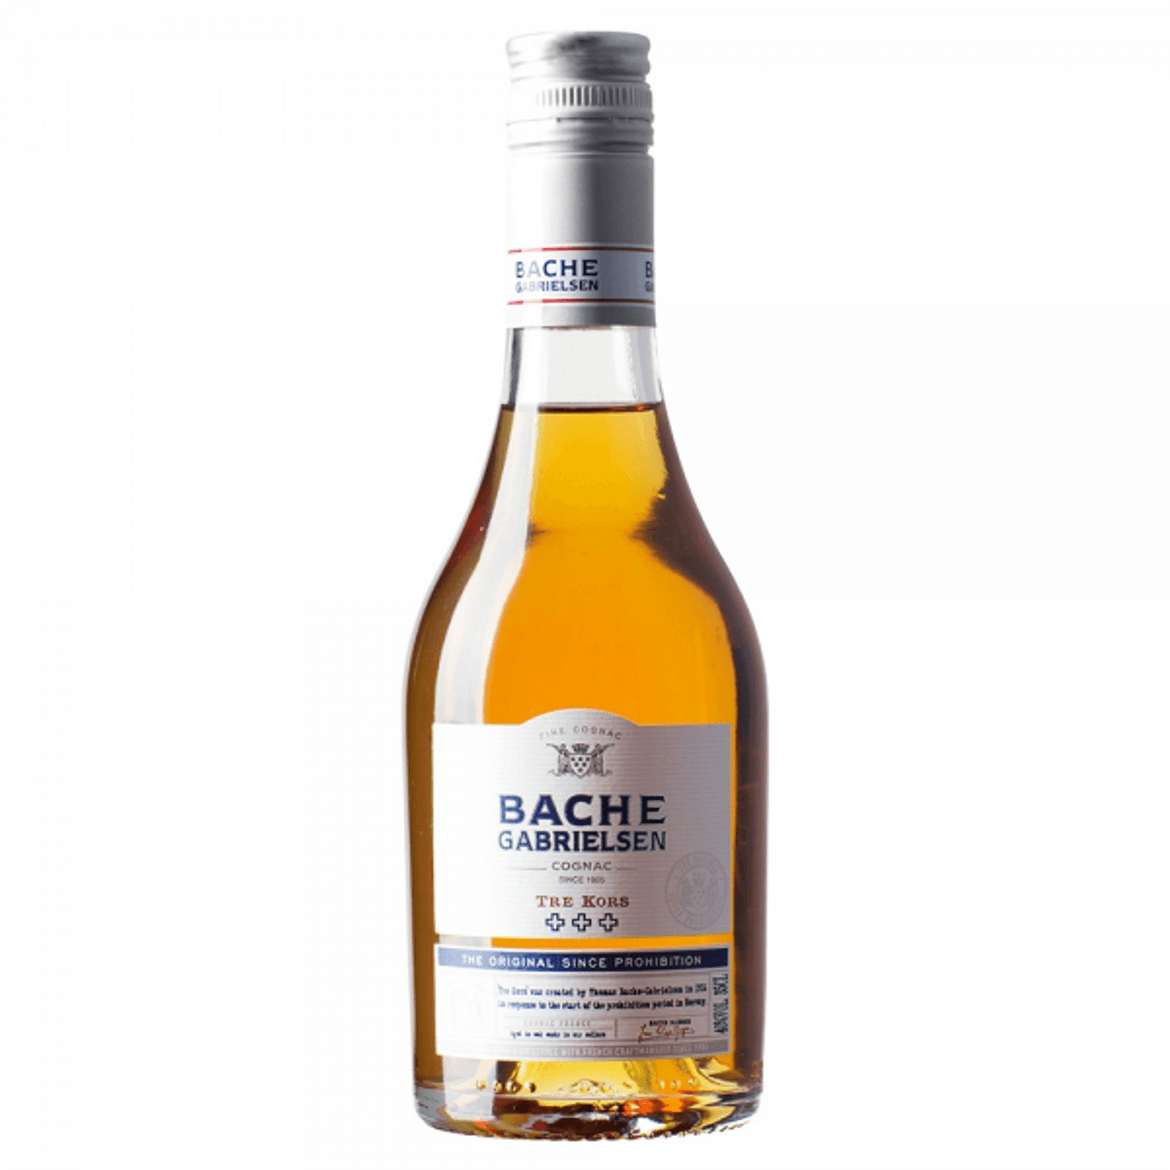 Bache-Gabrielsen VS Tre Kors cognac 40%